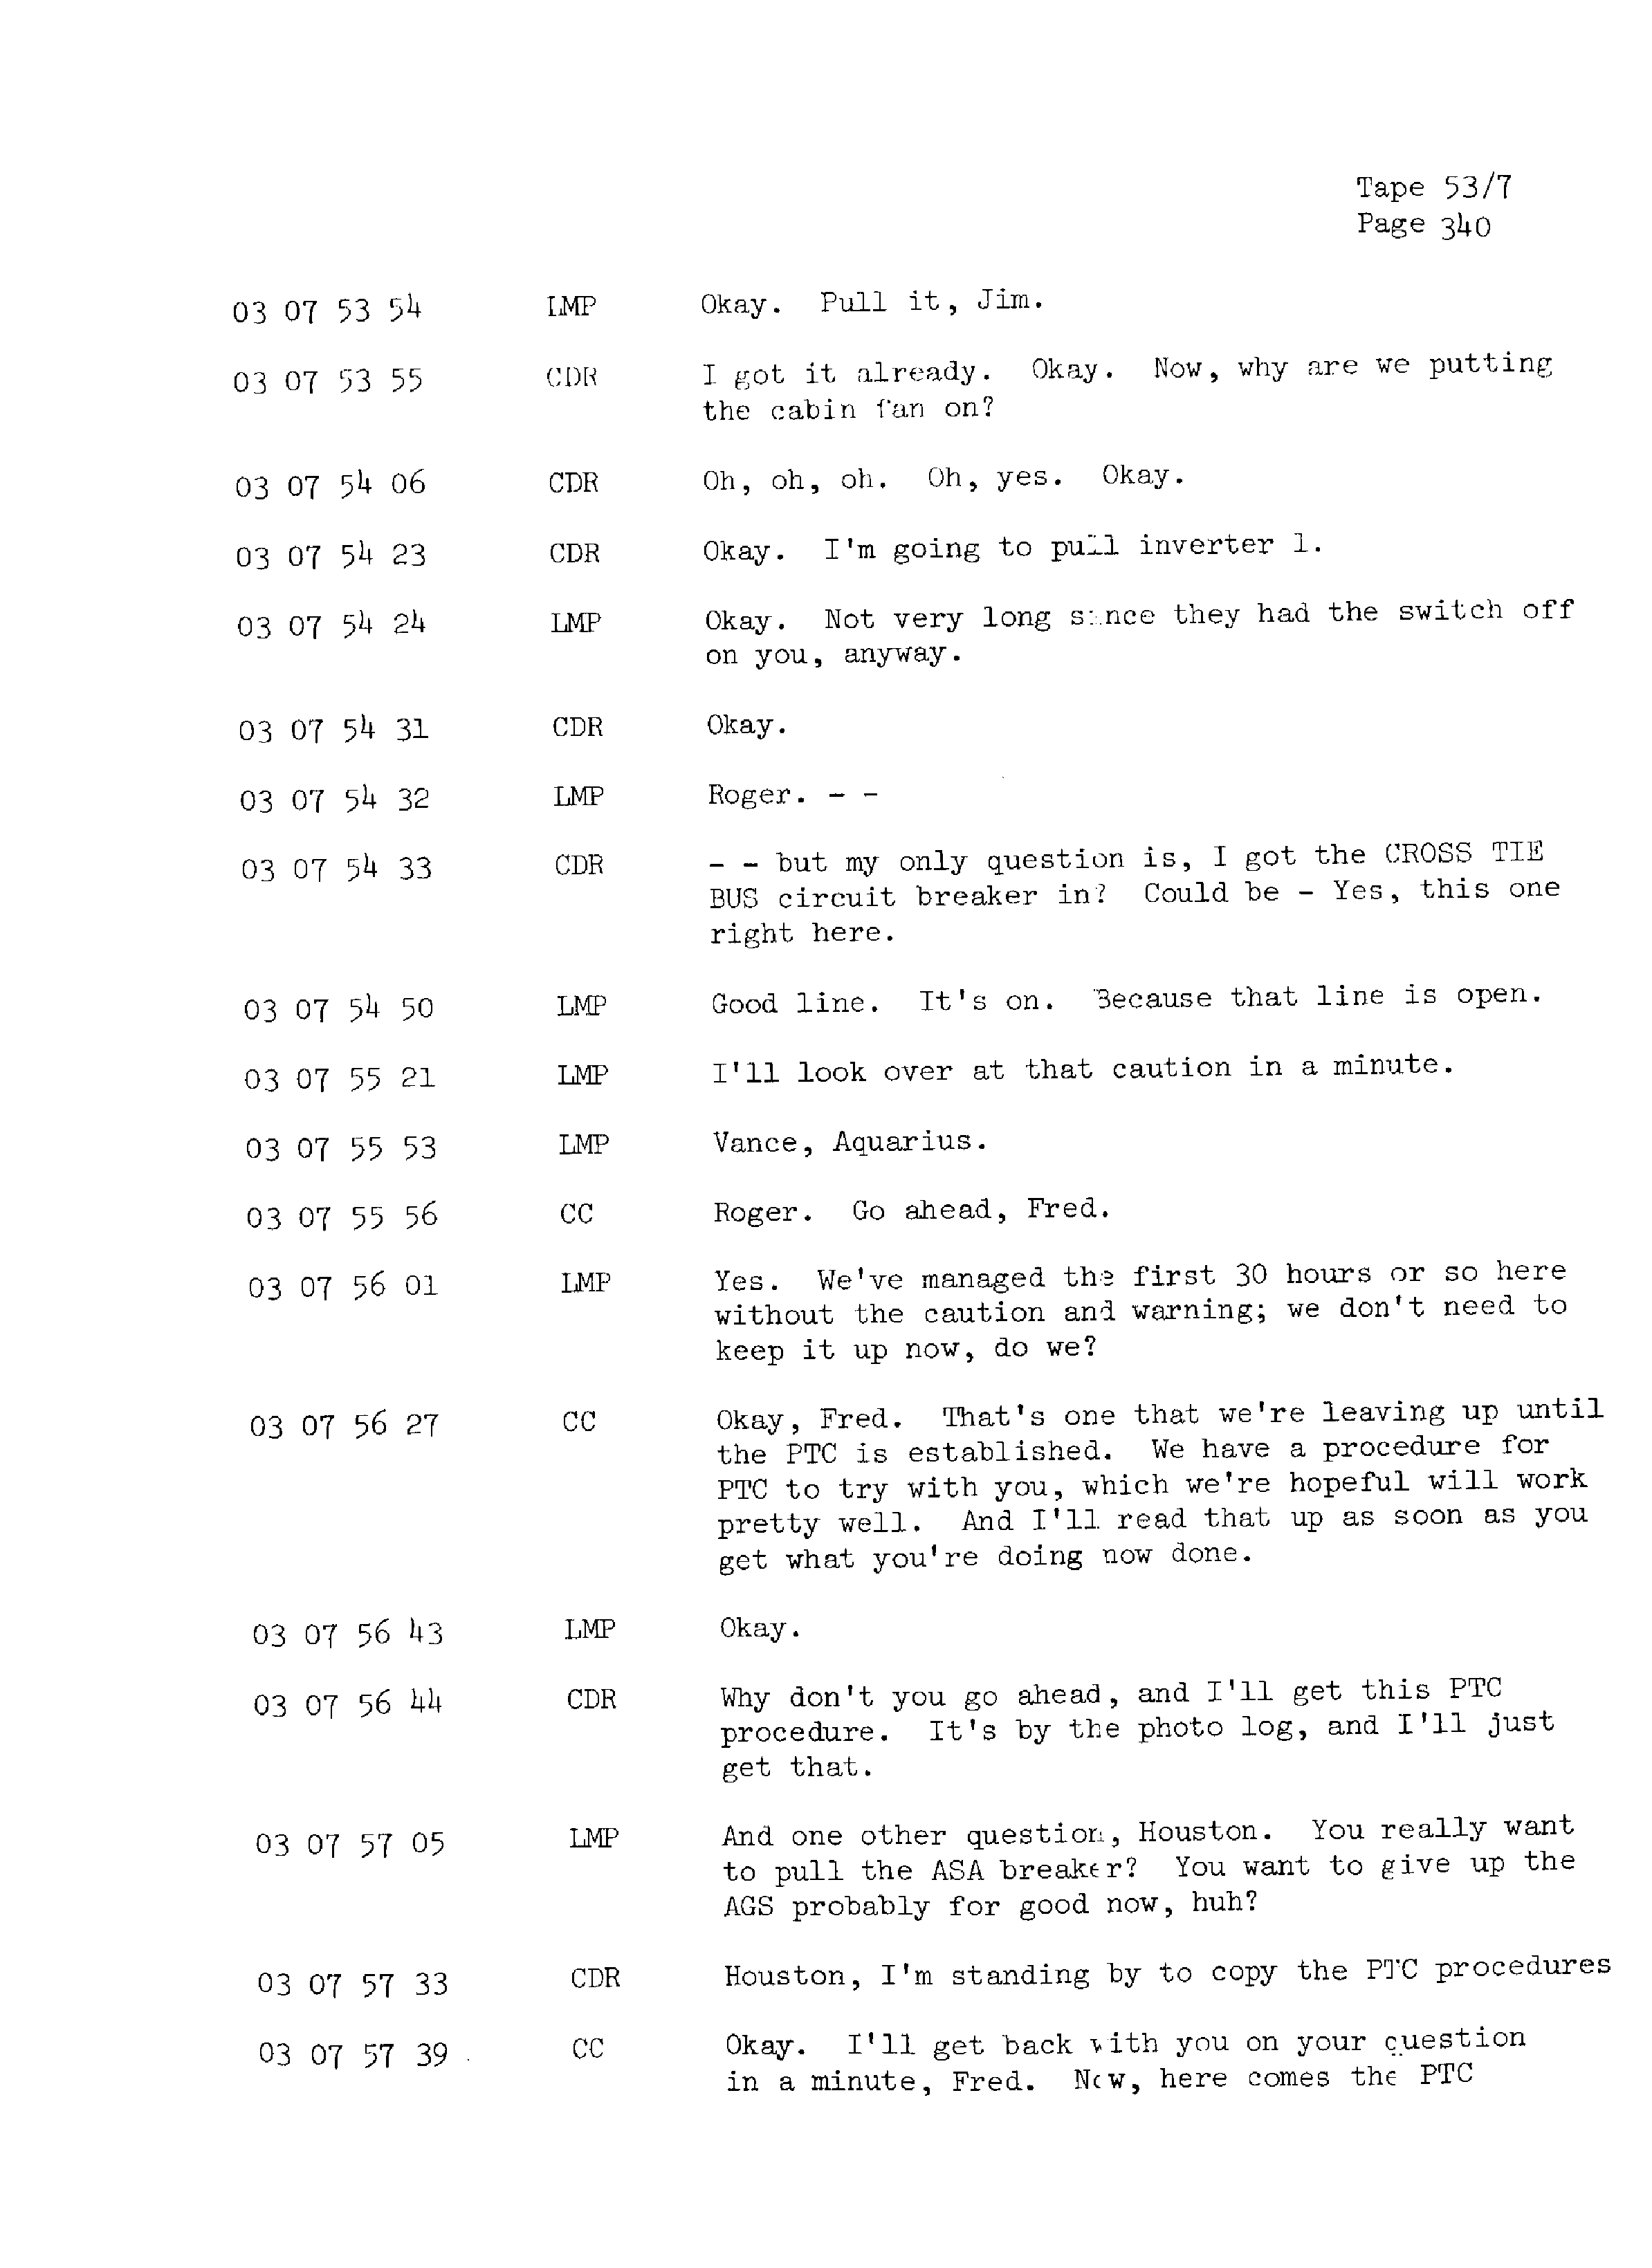 Page 347 of Apollo 13’s original transcript